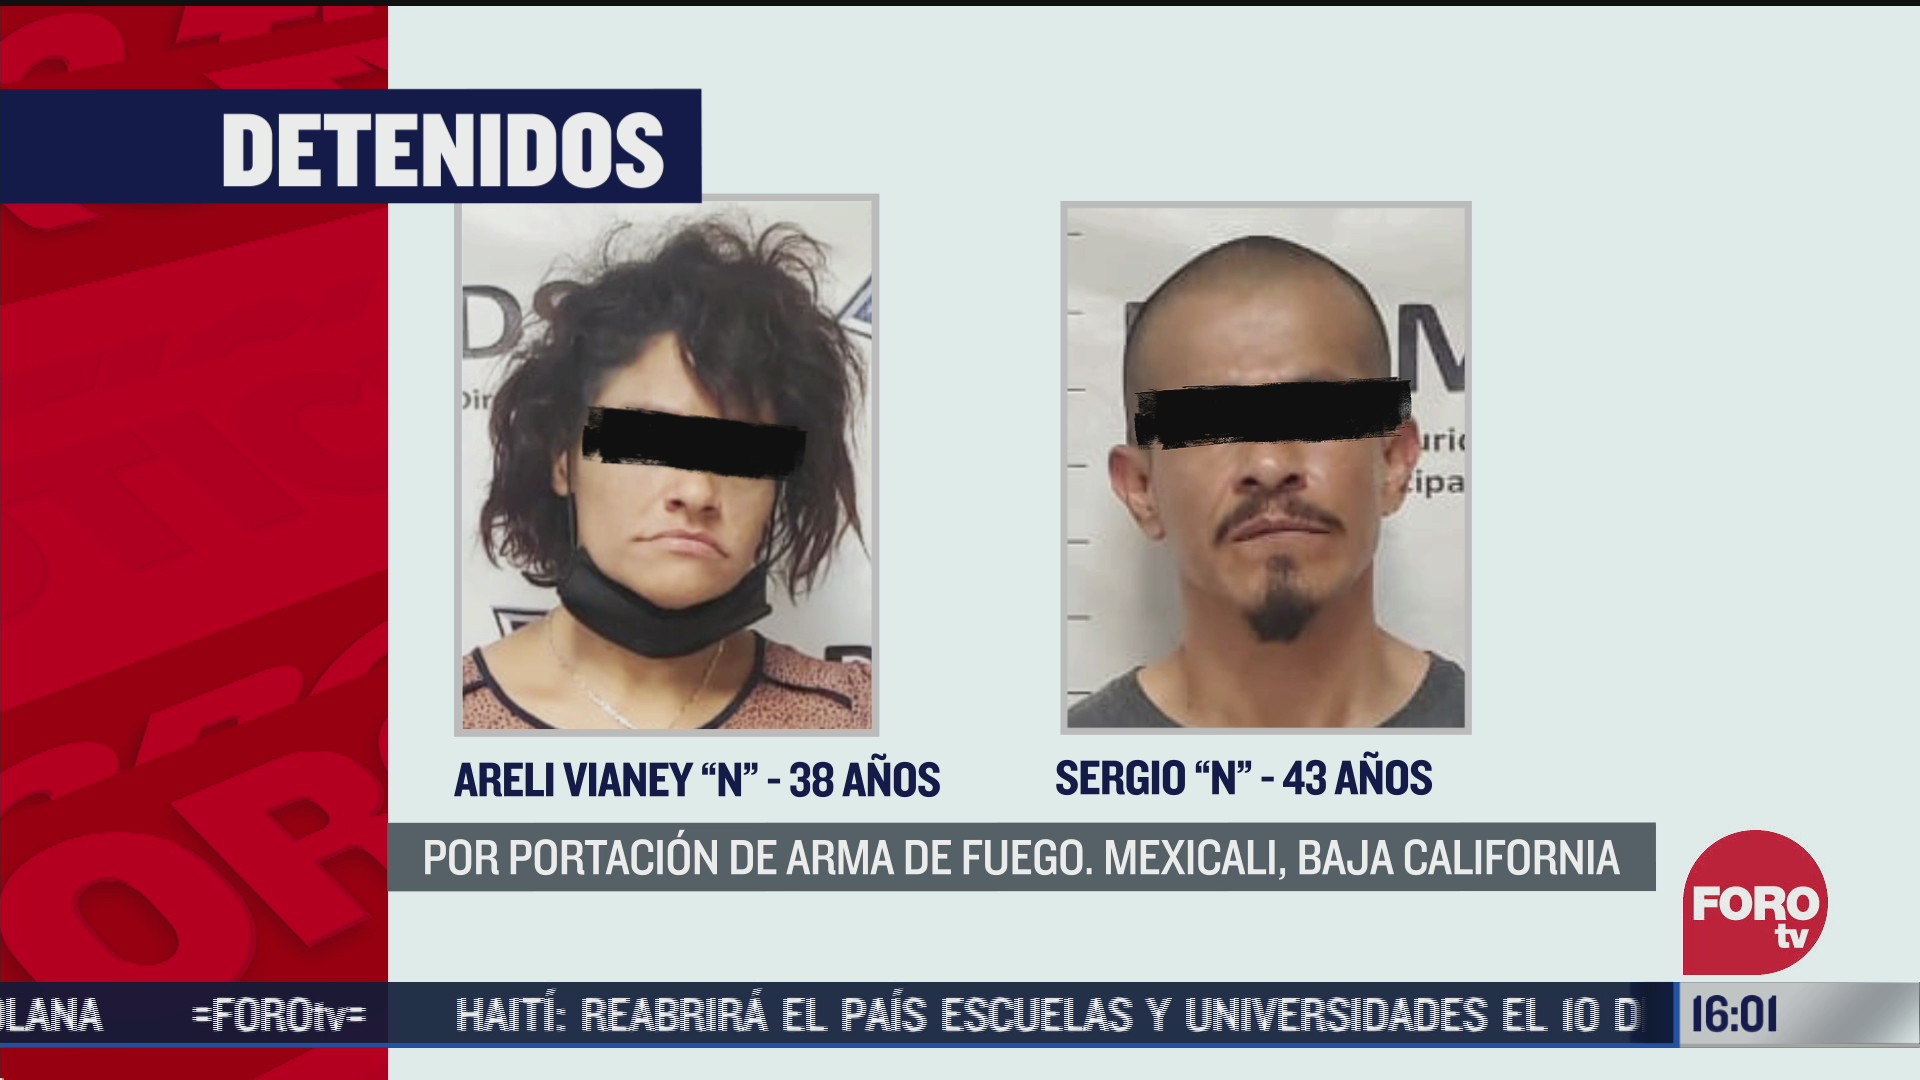 FOTO: 5 de julio 2020, detienen a dos personas en mexicali por portacion de arma de fuego